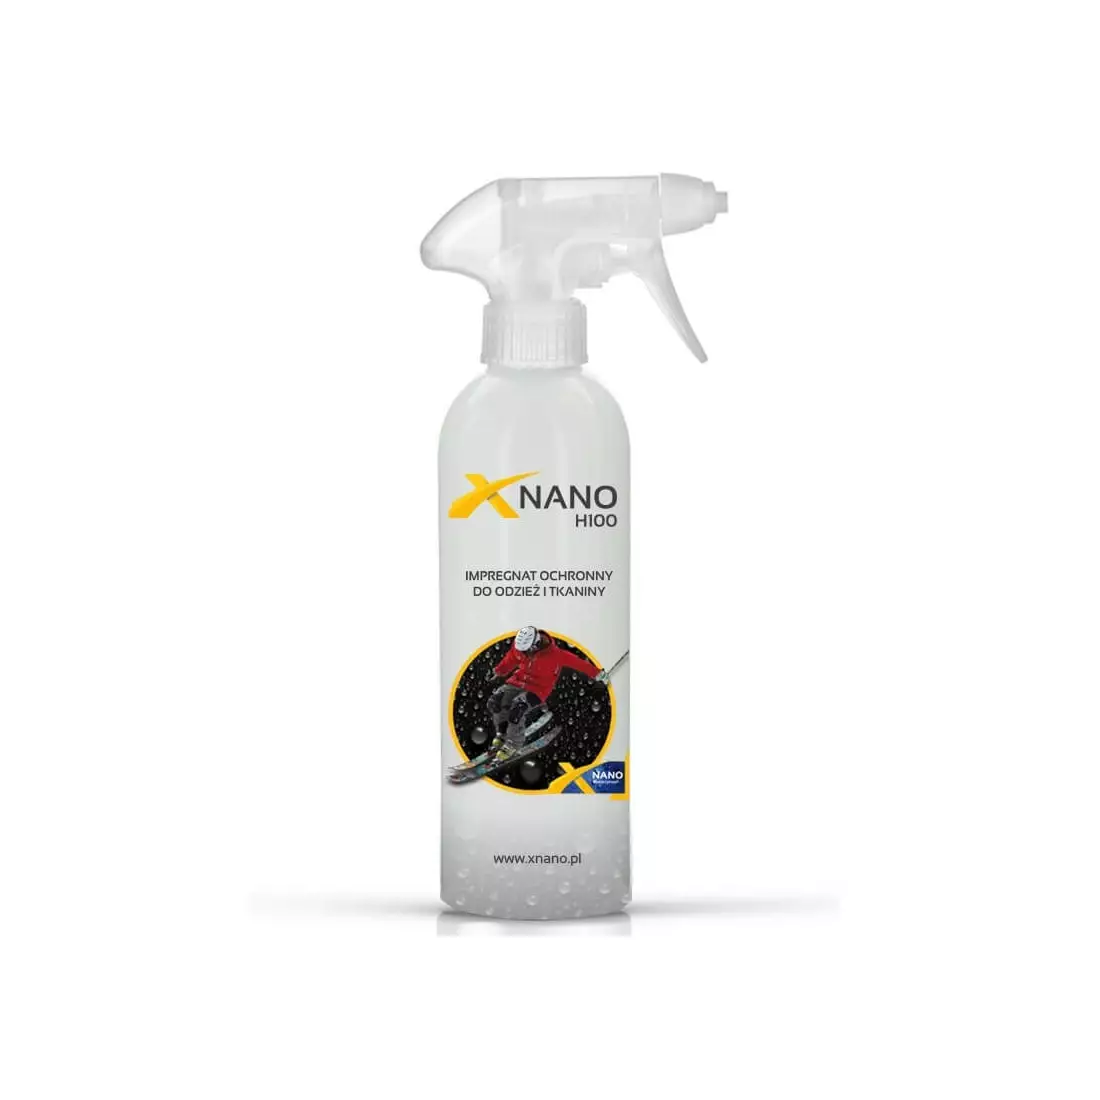 NANOBIZ - XNANO - H100 Ochranná impregnace na oděvy a tkaniny, objem: 250 ml